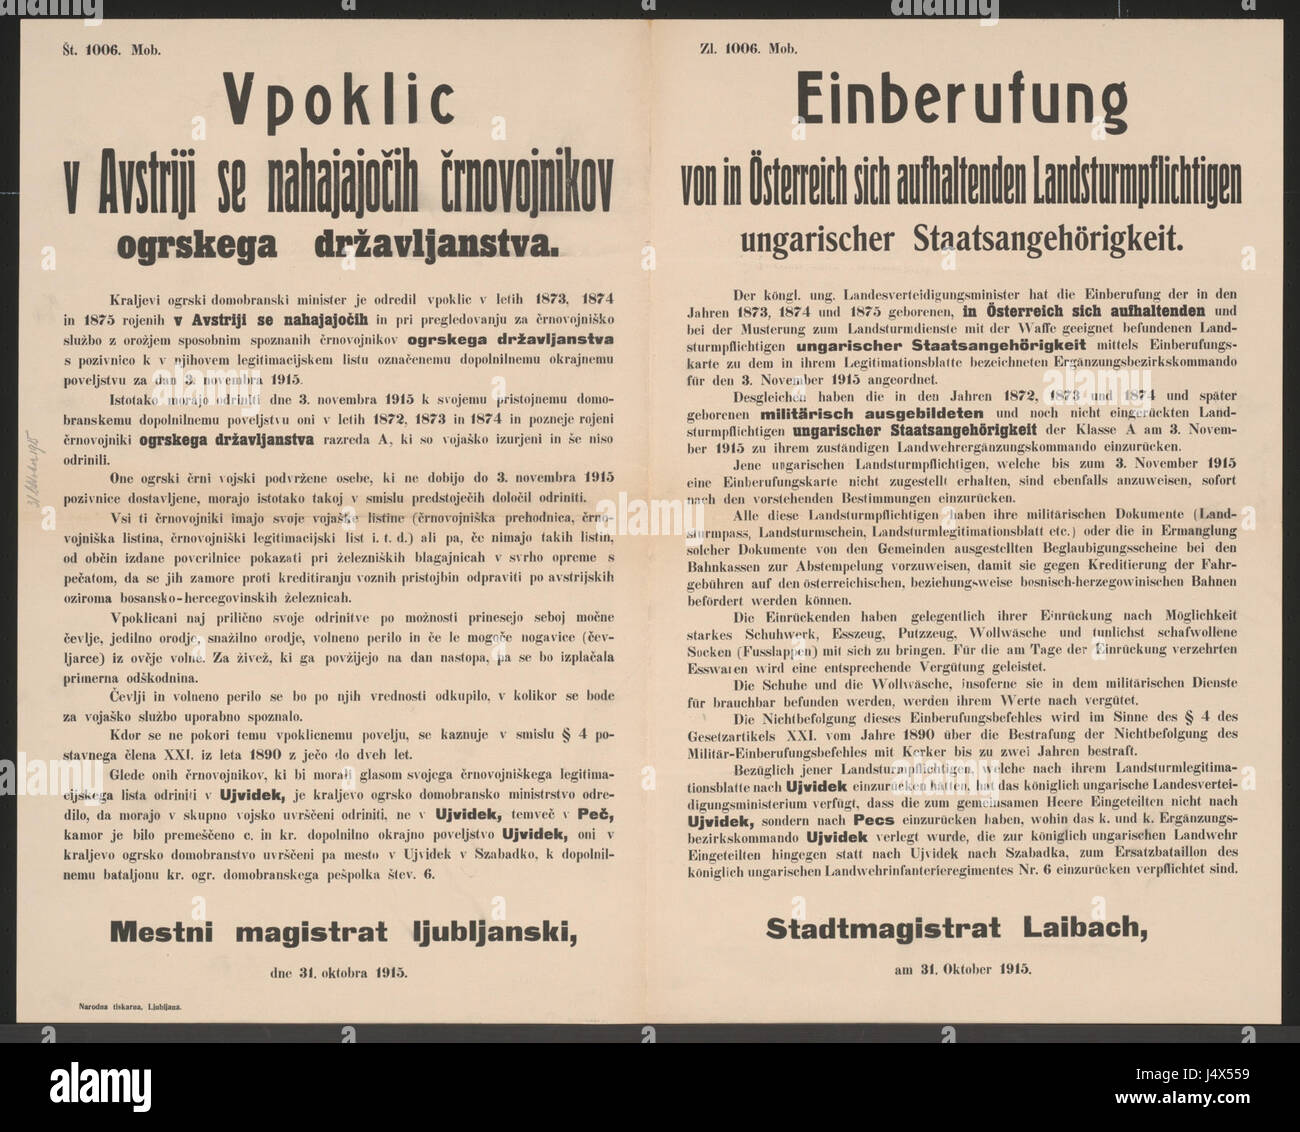 Ungarische Landsturmpflichtige   Einberufung   Laibach   Mehrsprachiges Plakat 1915 Stock Photo